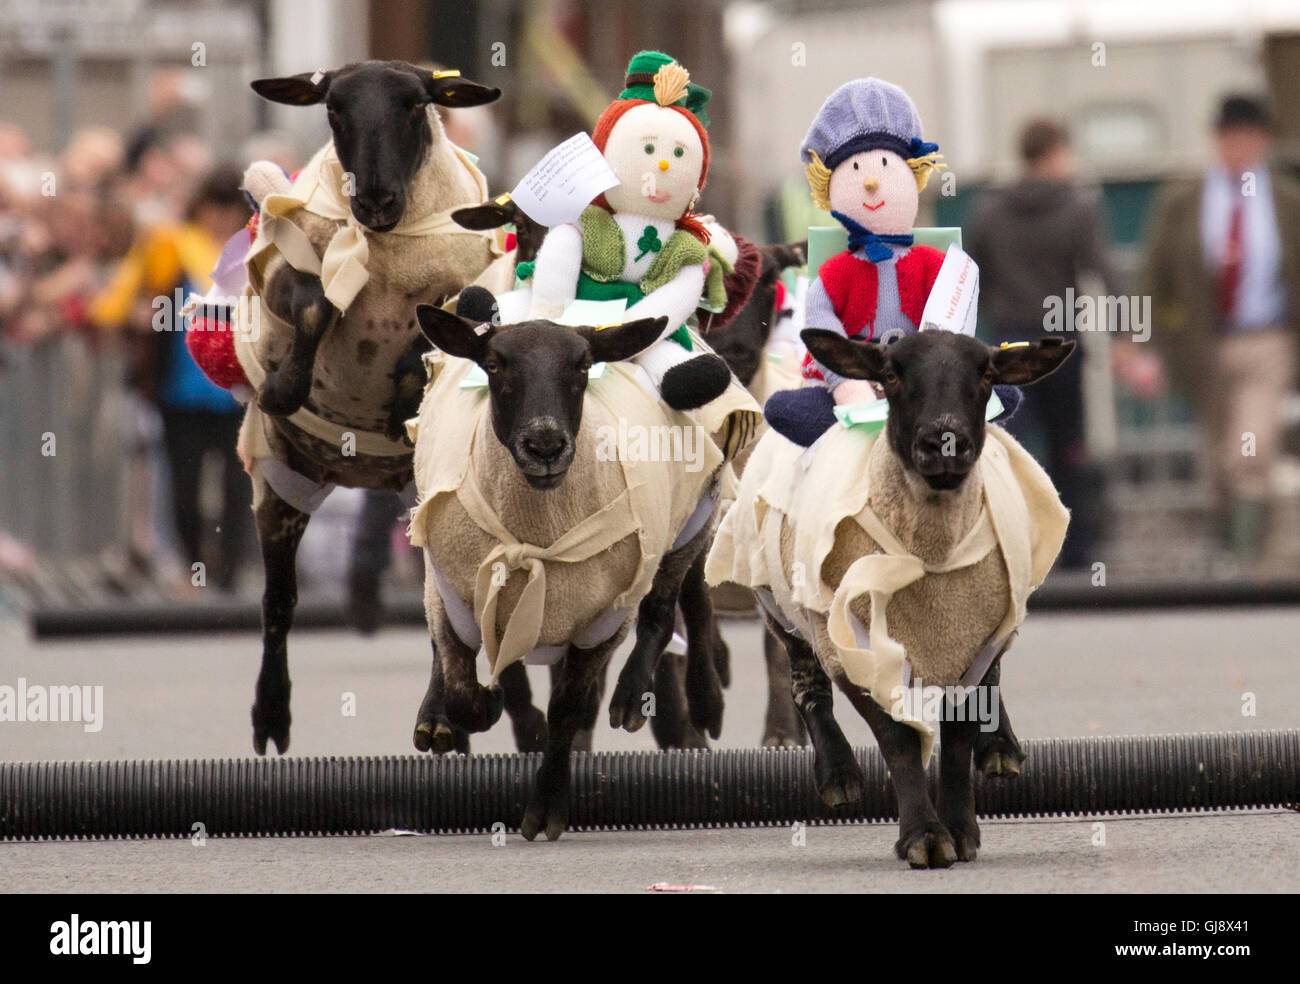 Moffat, Escocia. El 14 de agosto de 2016. Moffat ovejas racing 2016: Ovejas corriendo por Moffat High Street. Saltar sobre el segundo salto Crédito: Sur Oeste de Escocia Imágenes/Alamy Live News Foto de stock